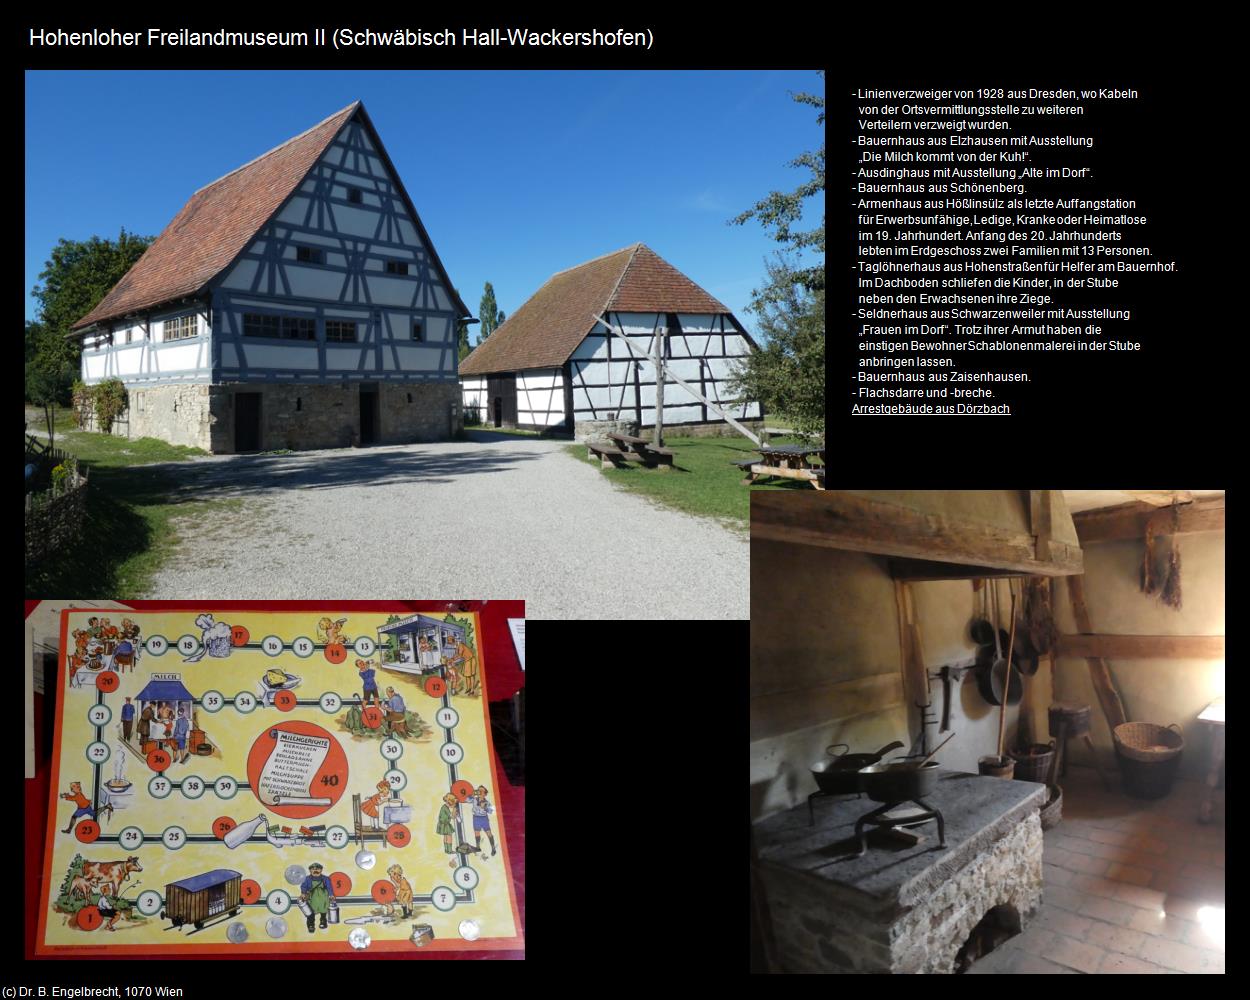 Hohenloher Freilandmuseum II (Wackershofen) (Schwäbisch Hall) in Kulturatlas-BADEN-WÜRTTEMBERG(c)B.Engelbrecht